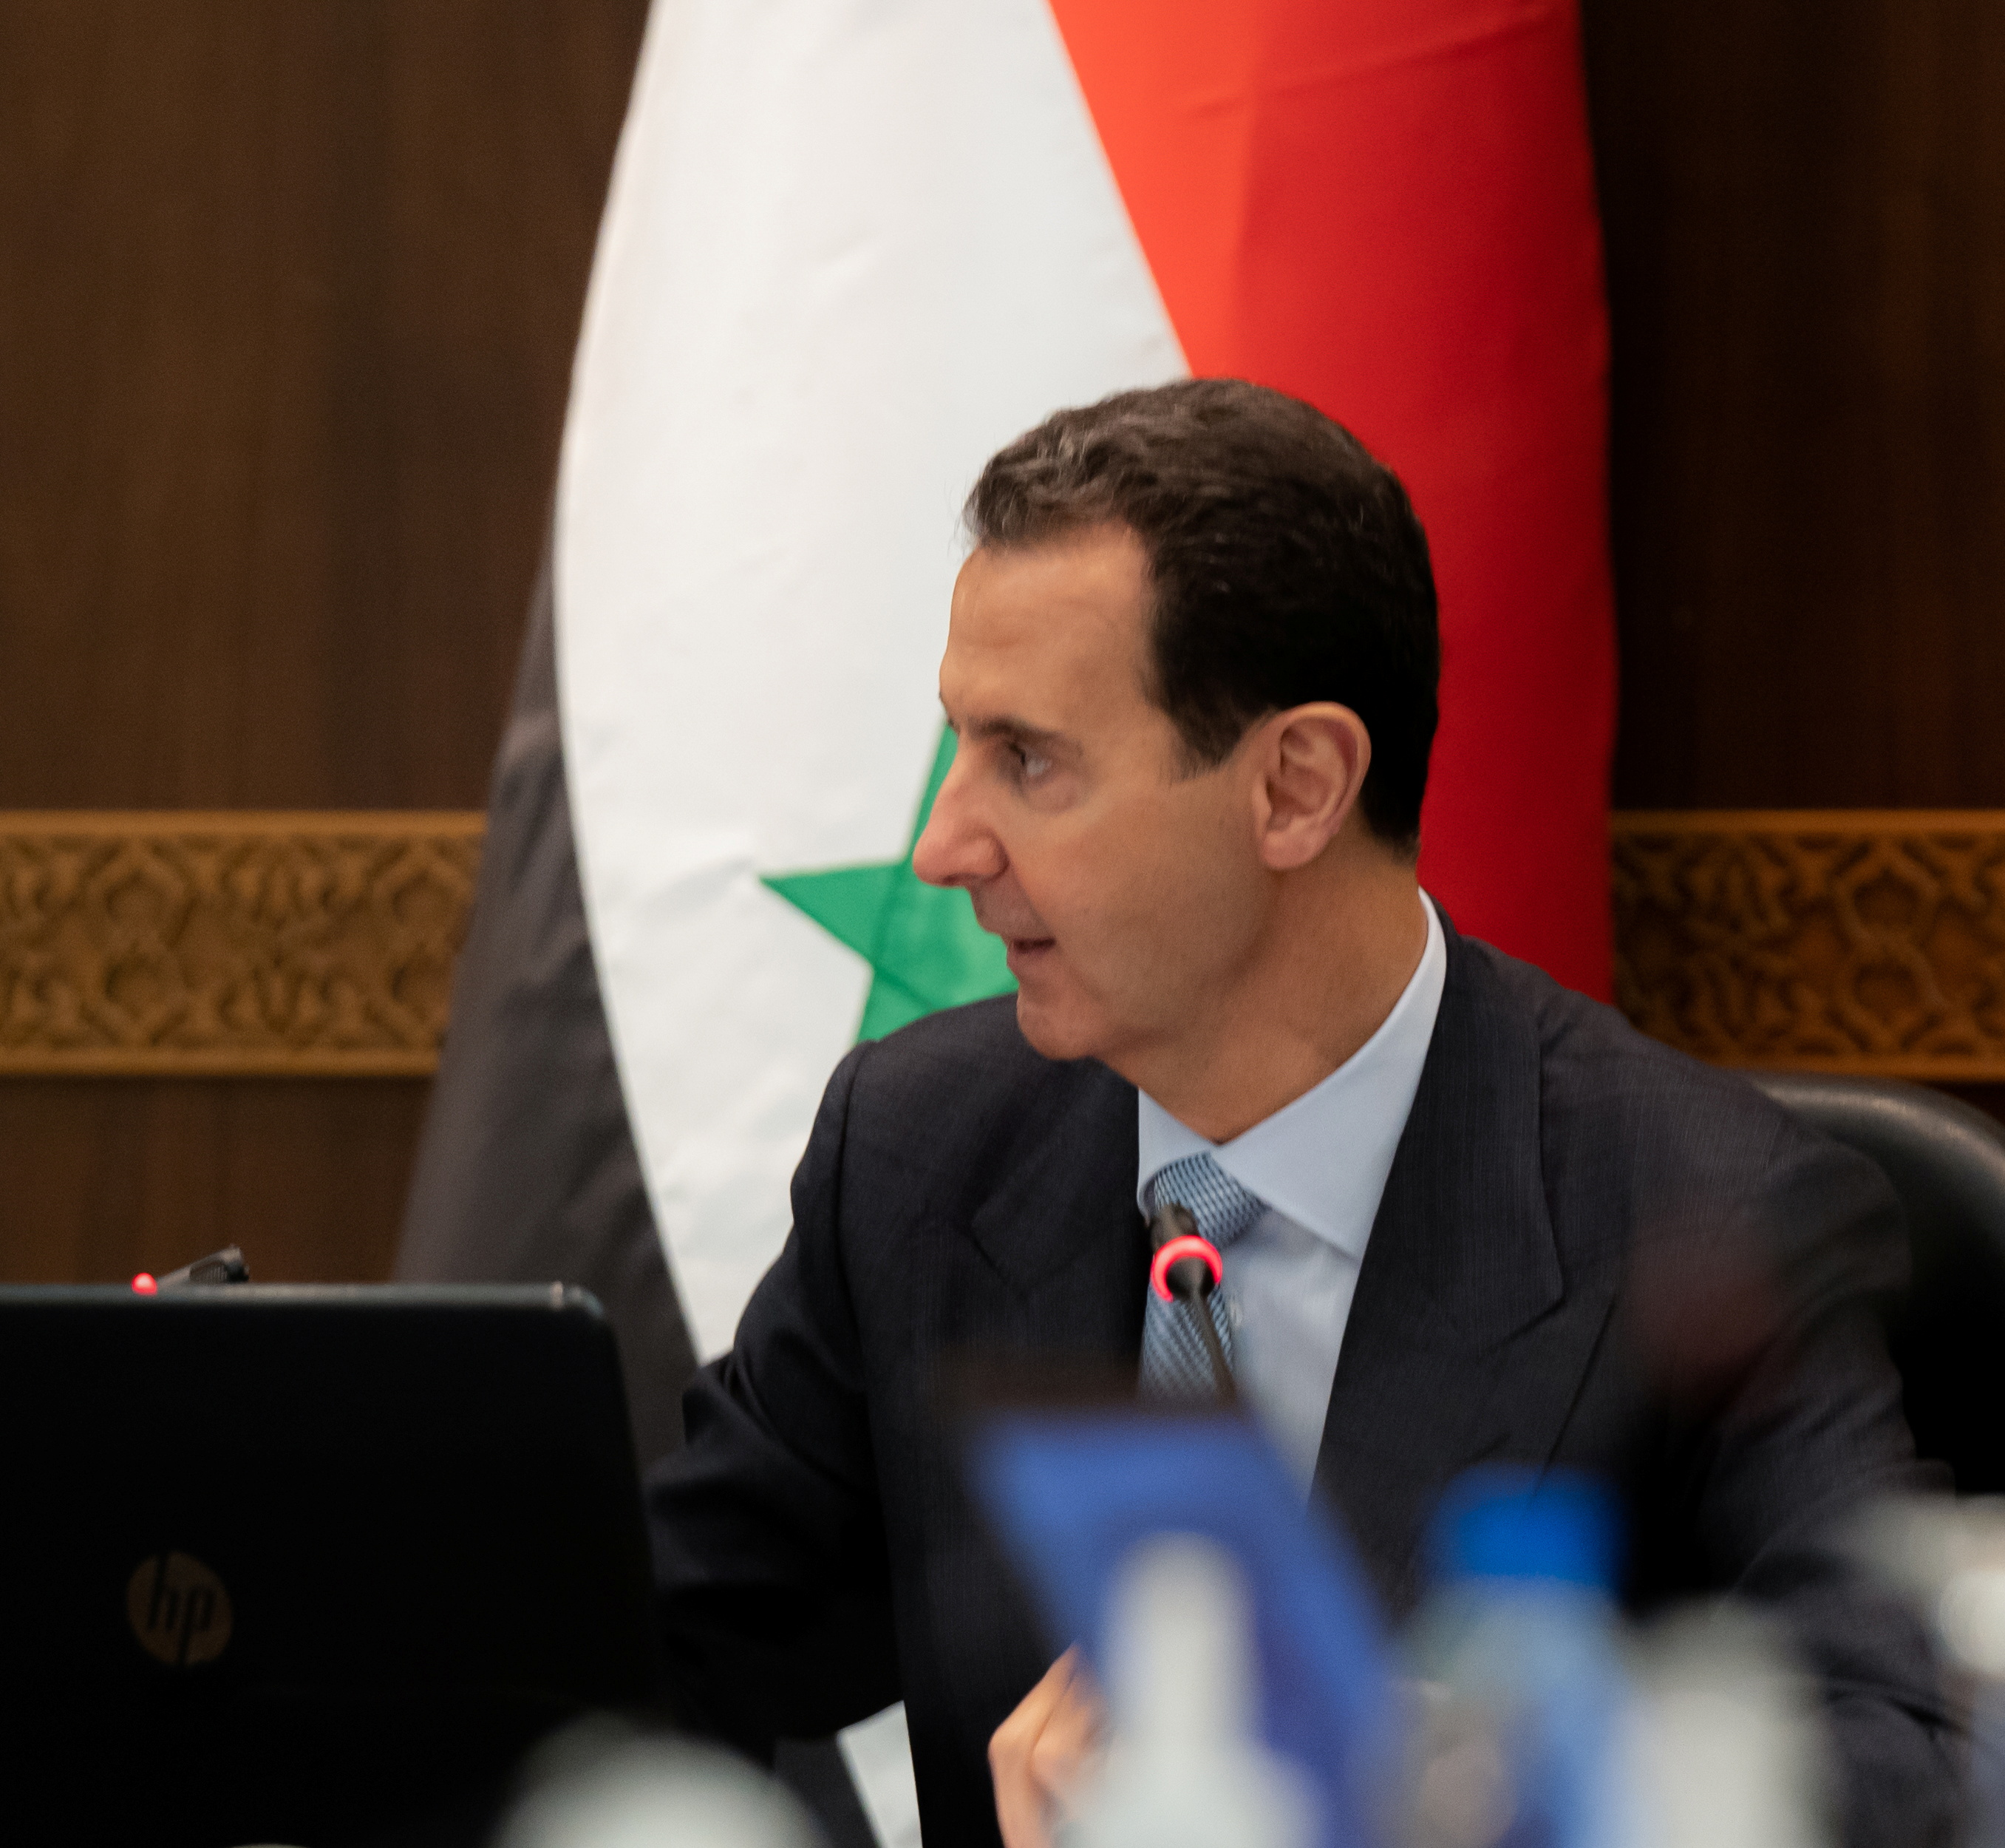 iraqi prime minister visits syria